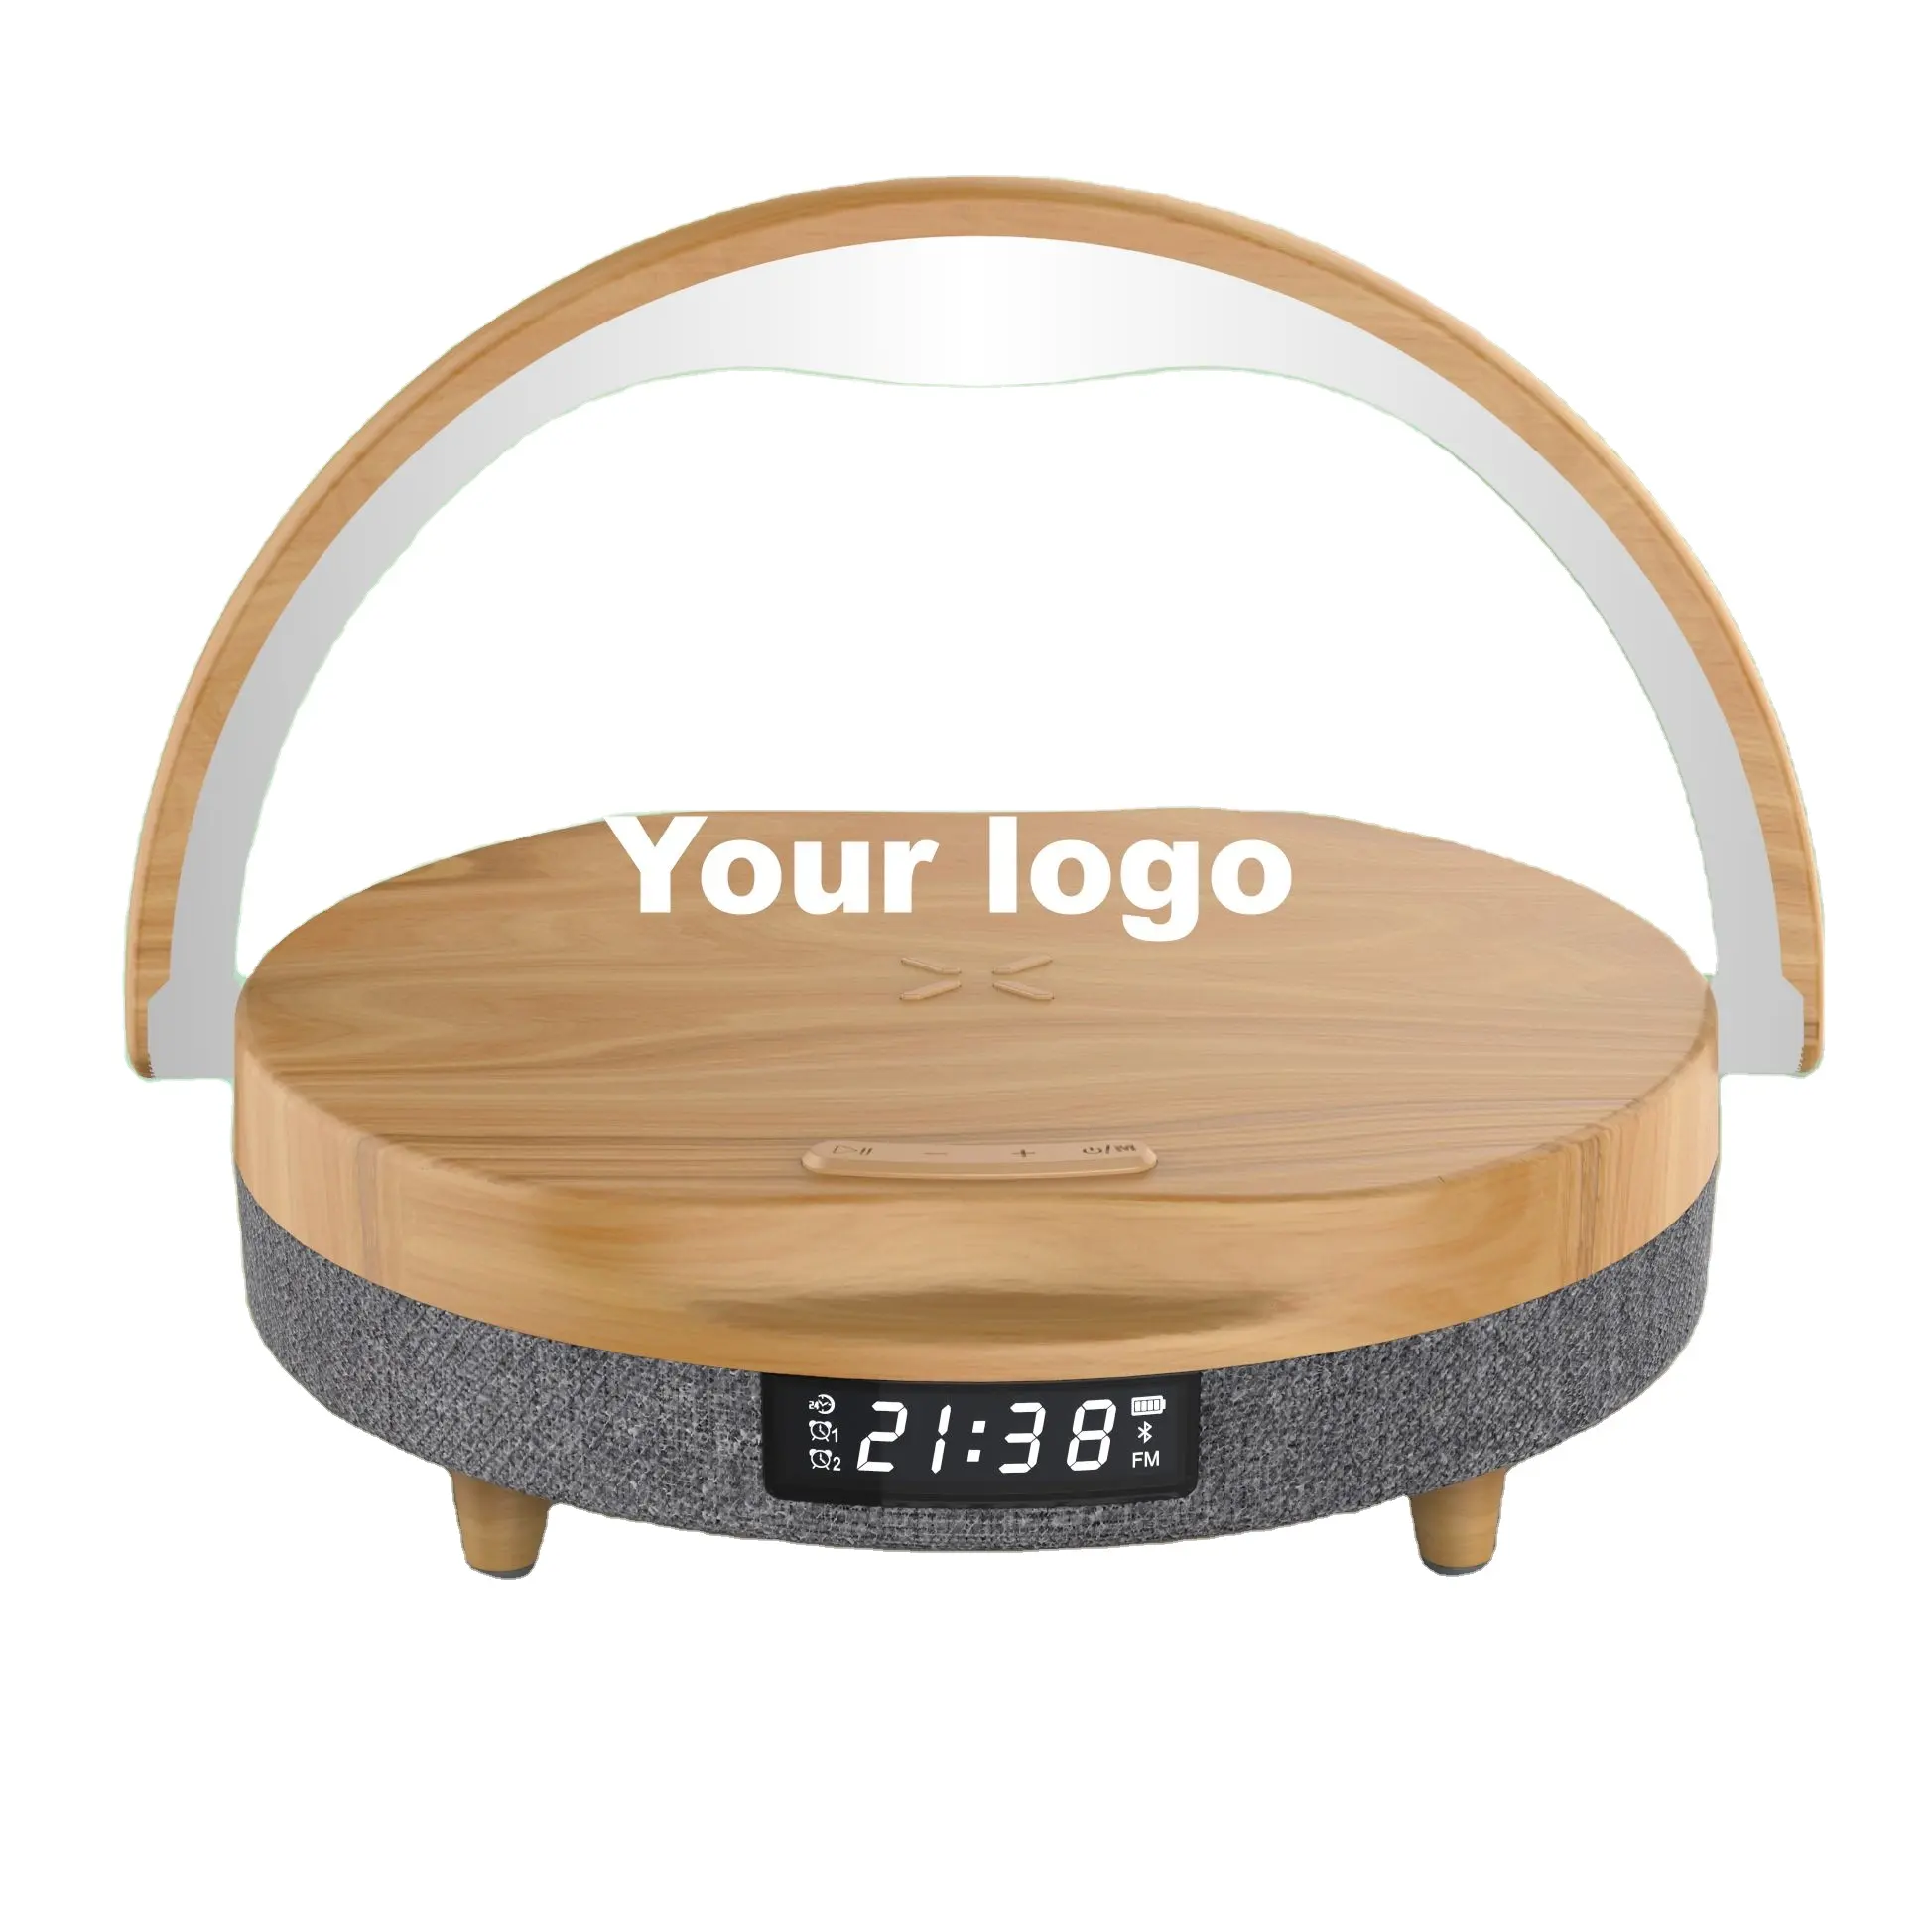 OEM Logo Pemium promozione ordine regalo lampada intelligente con caricatore Wireless veloce Qi altoparlante Bluetooth e Display a LED orologio digitale